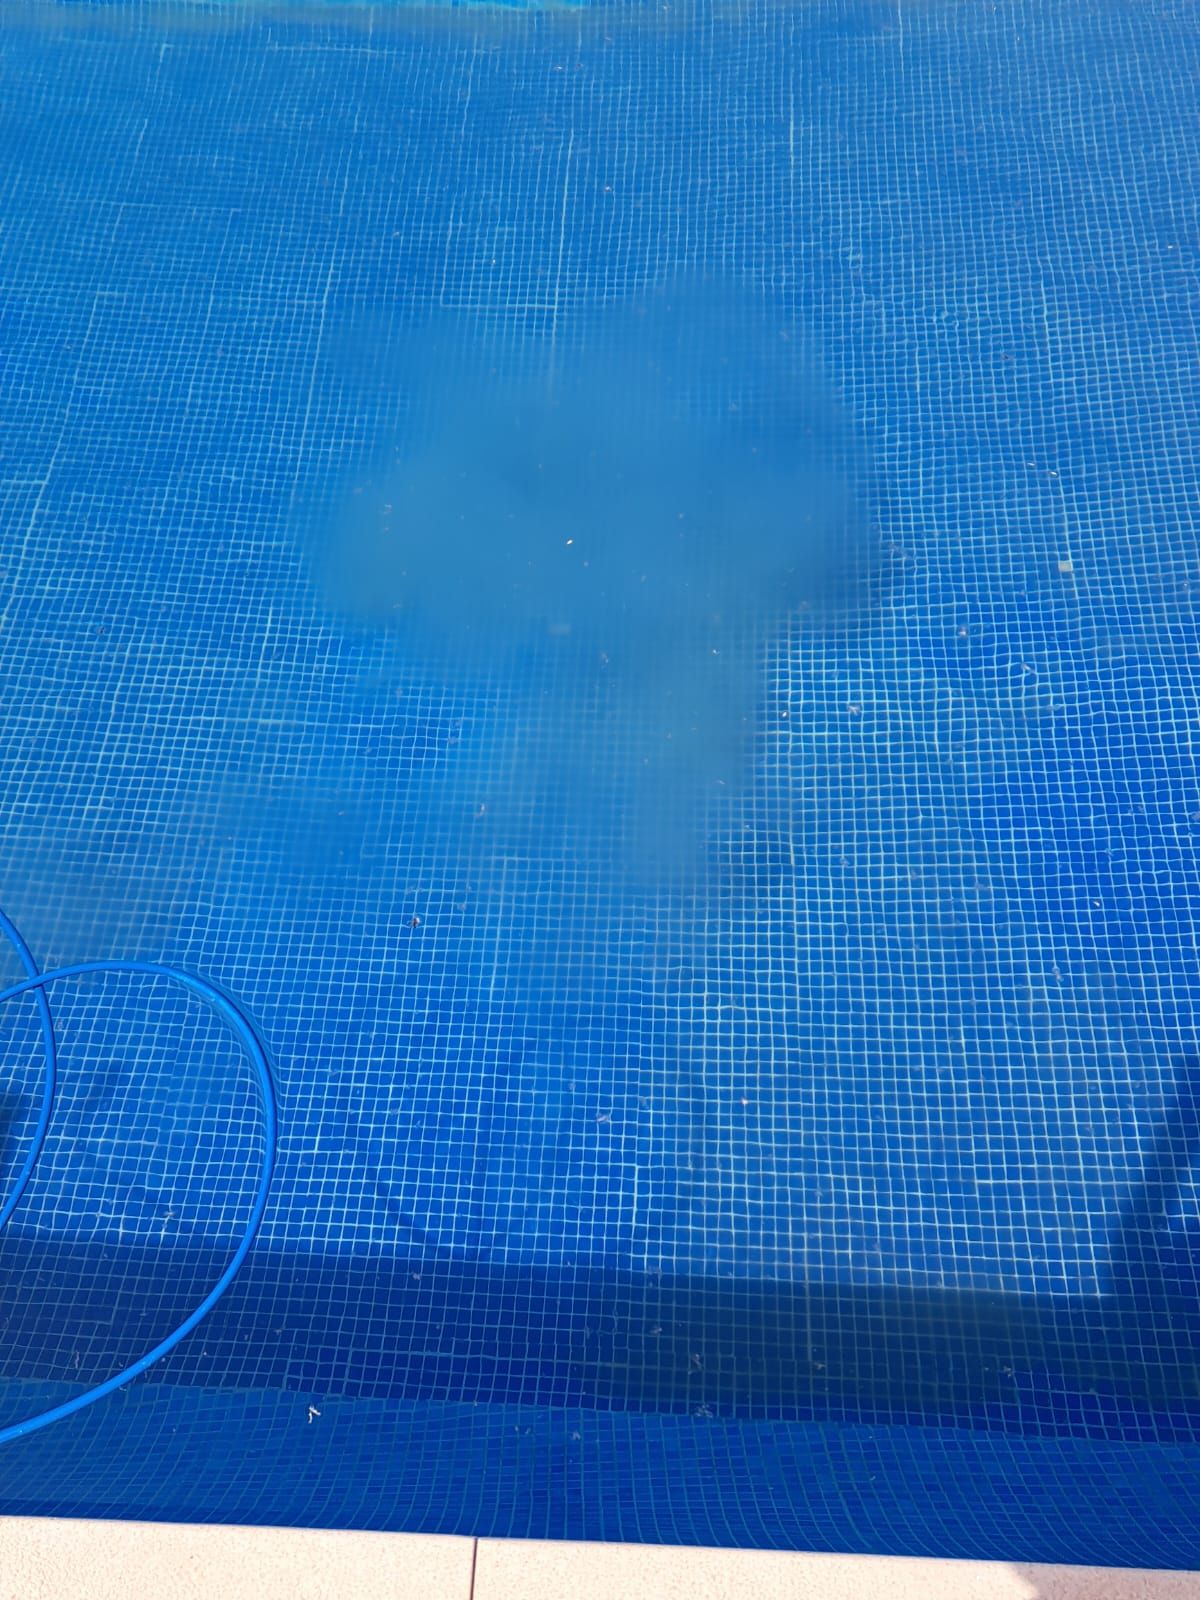 Limpiafondos de piscina haciendo efecto chimenea en un suelo con floculos.